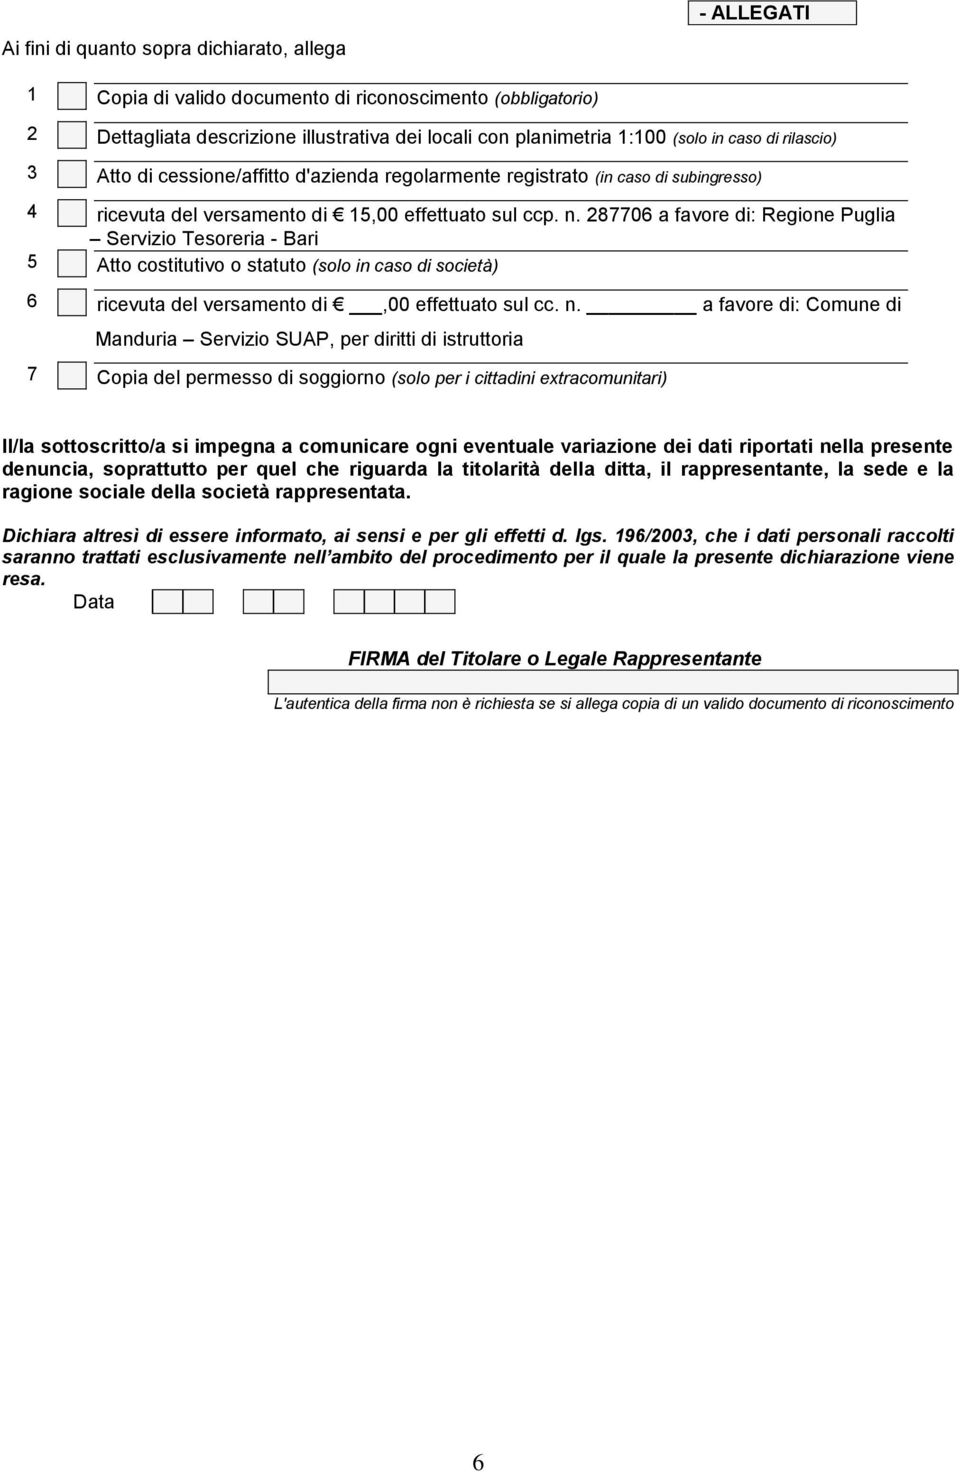 287706 a favore di: Regione Puglia Servizio Tesoreria - Bari 5 Atto costitutivo o statuto (solo in caso di società) 6 ricevuta del versamento di,00 effettuato sul cc. n.